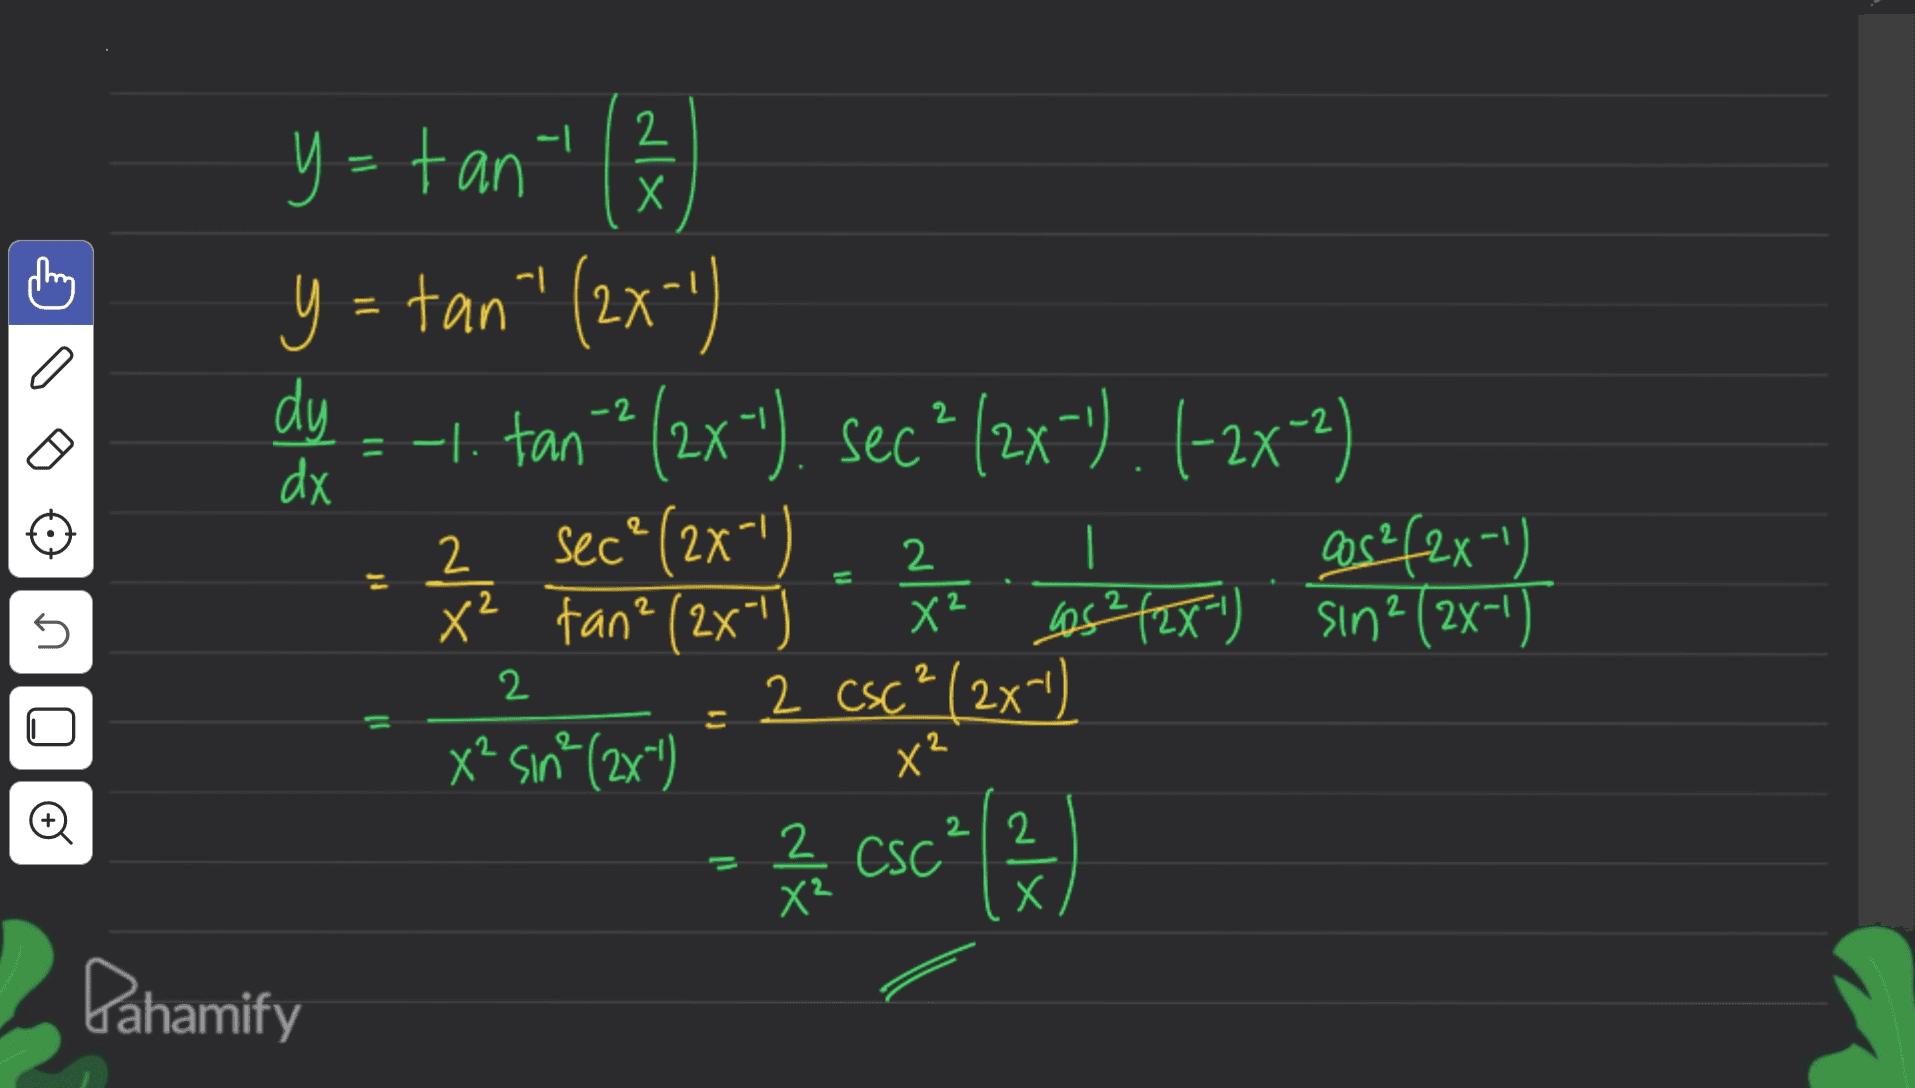 -1 dla -2 2 y=tant ( y=tan" (2x-1) dy =-1. tana (2x"), secº (2x-").(-2x-2) . Secº (2x) 2 47 cos²(2x-1) X² tan? (2x-1) X² . Los²/2x-1) . sin2(2x-1) 2 CSC² ) dx 2 | 2 2 2 2 5 Х 2 2x Oo x* sn^(2xy = 2 set (230) X² 2 22 CSC X² Х Pahamify 